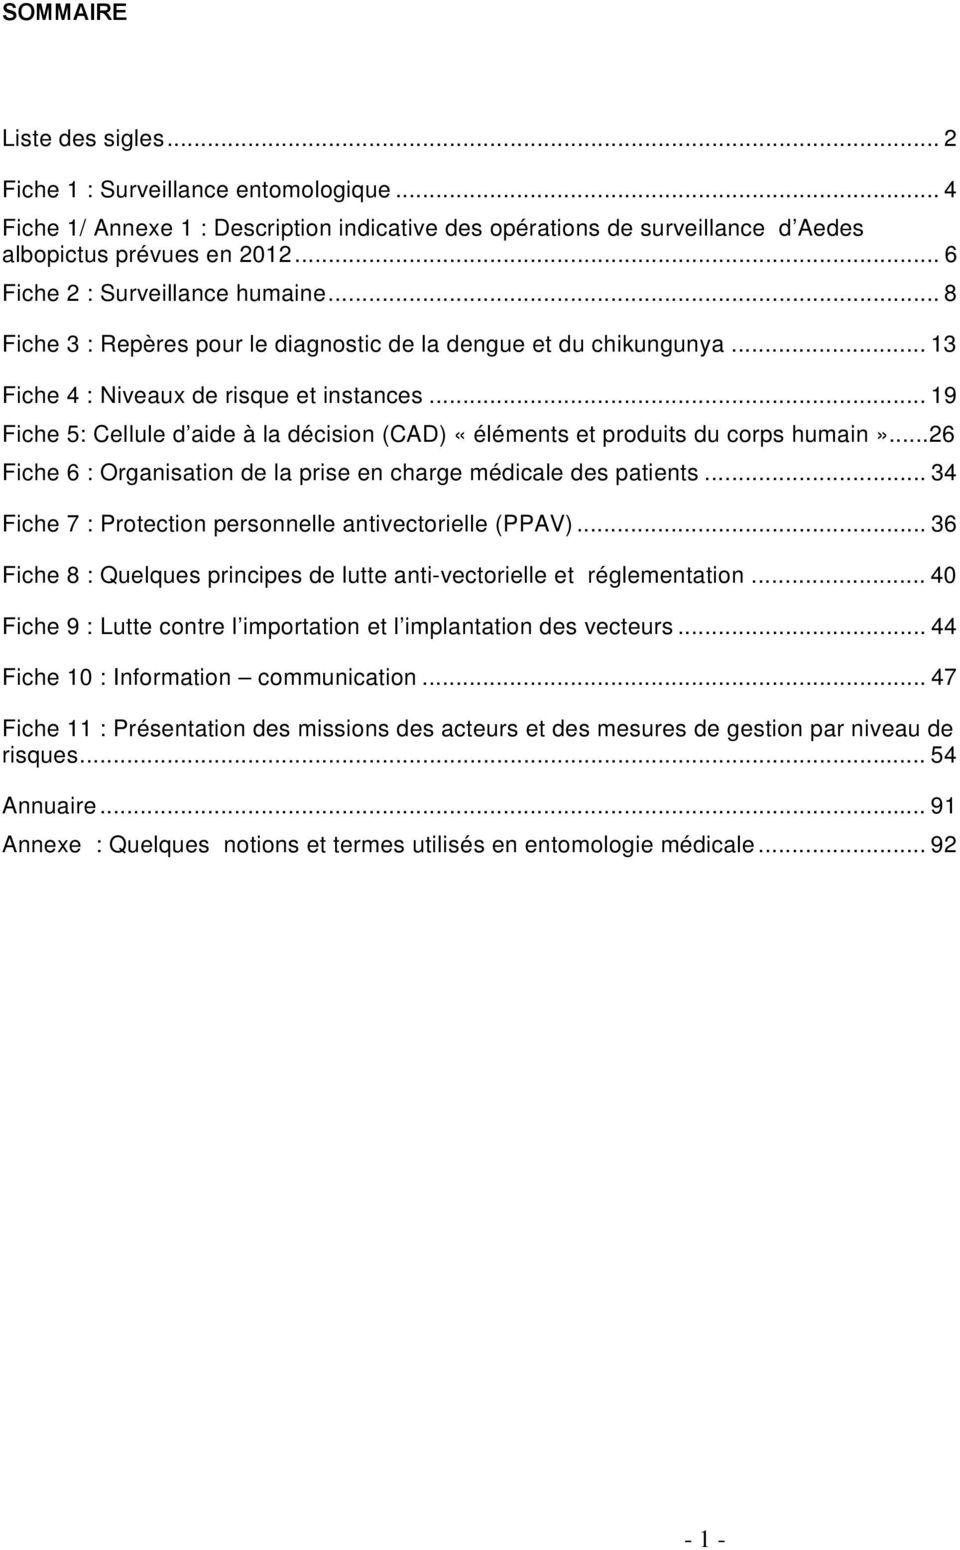 .. 19 Fiche 5: Cellule d aide à la décision (CAD) «éléments et produits du corps humain»...26 Fiche 6 : Organisation de la prise en charge médicale des patients.